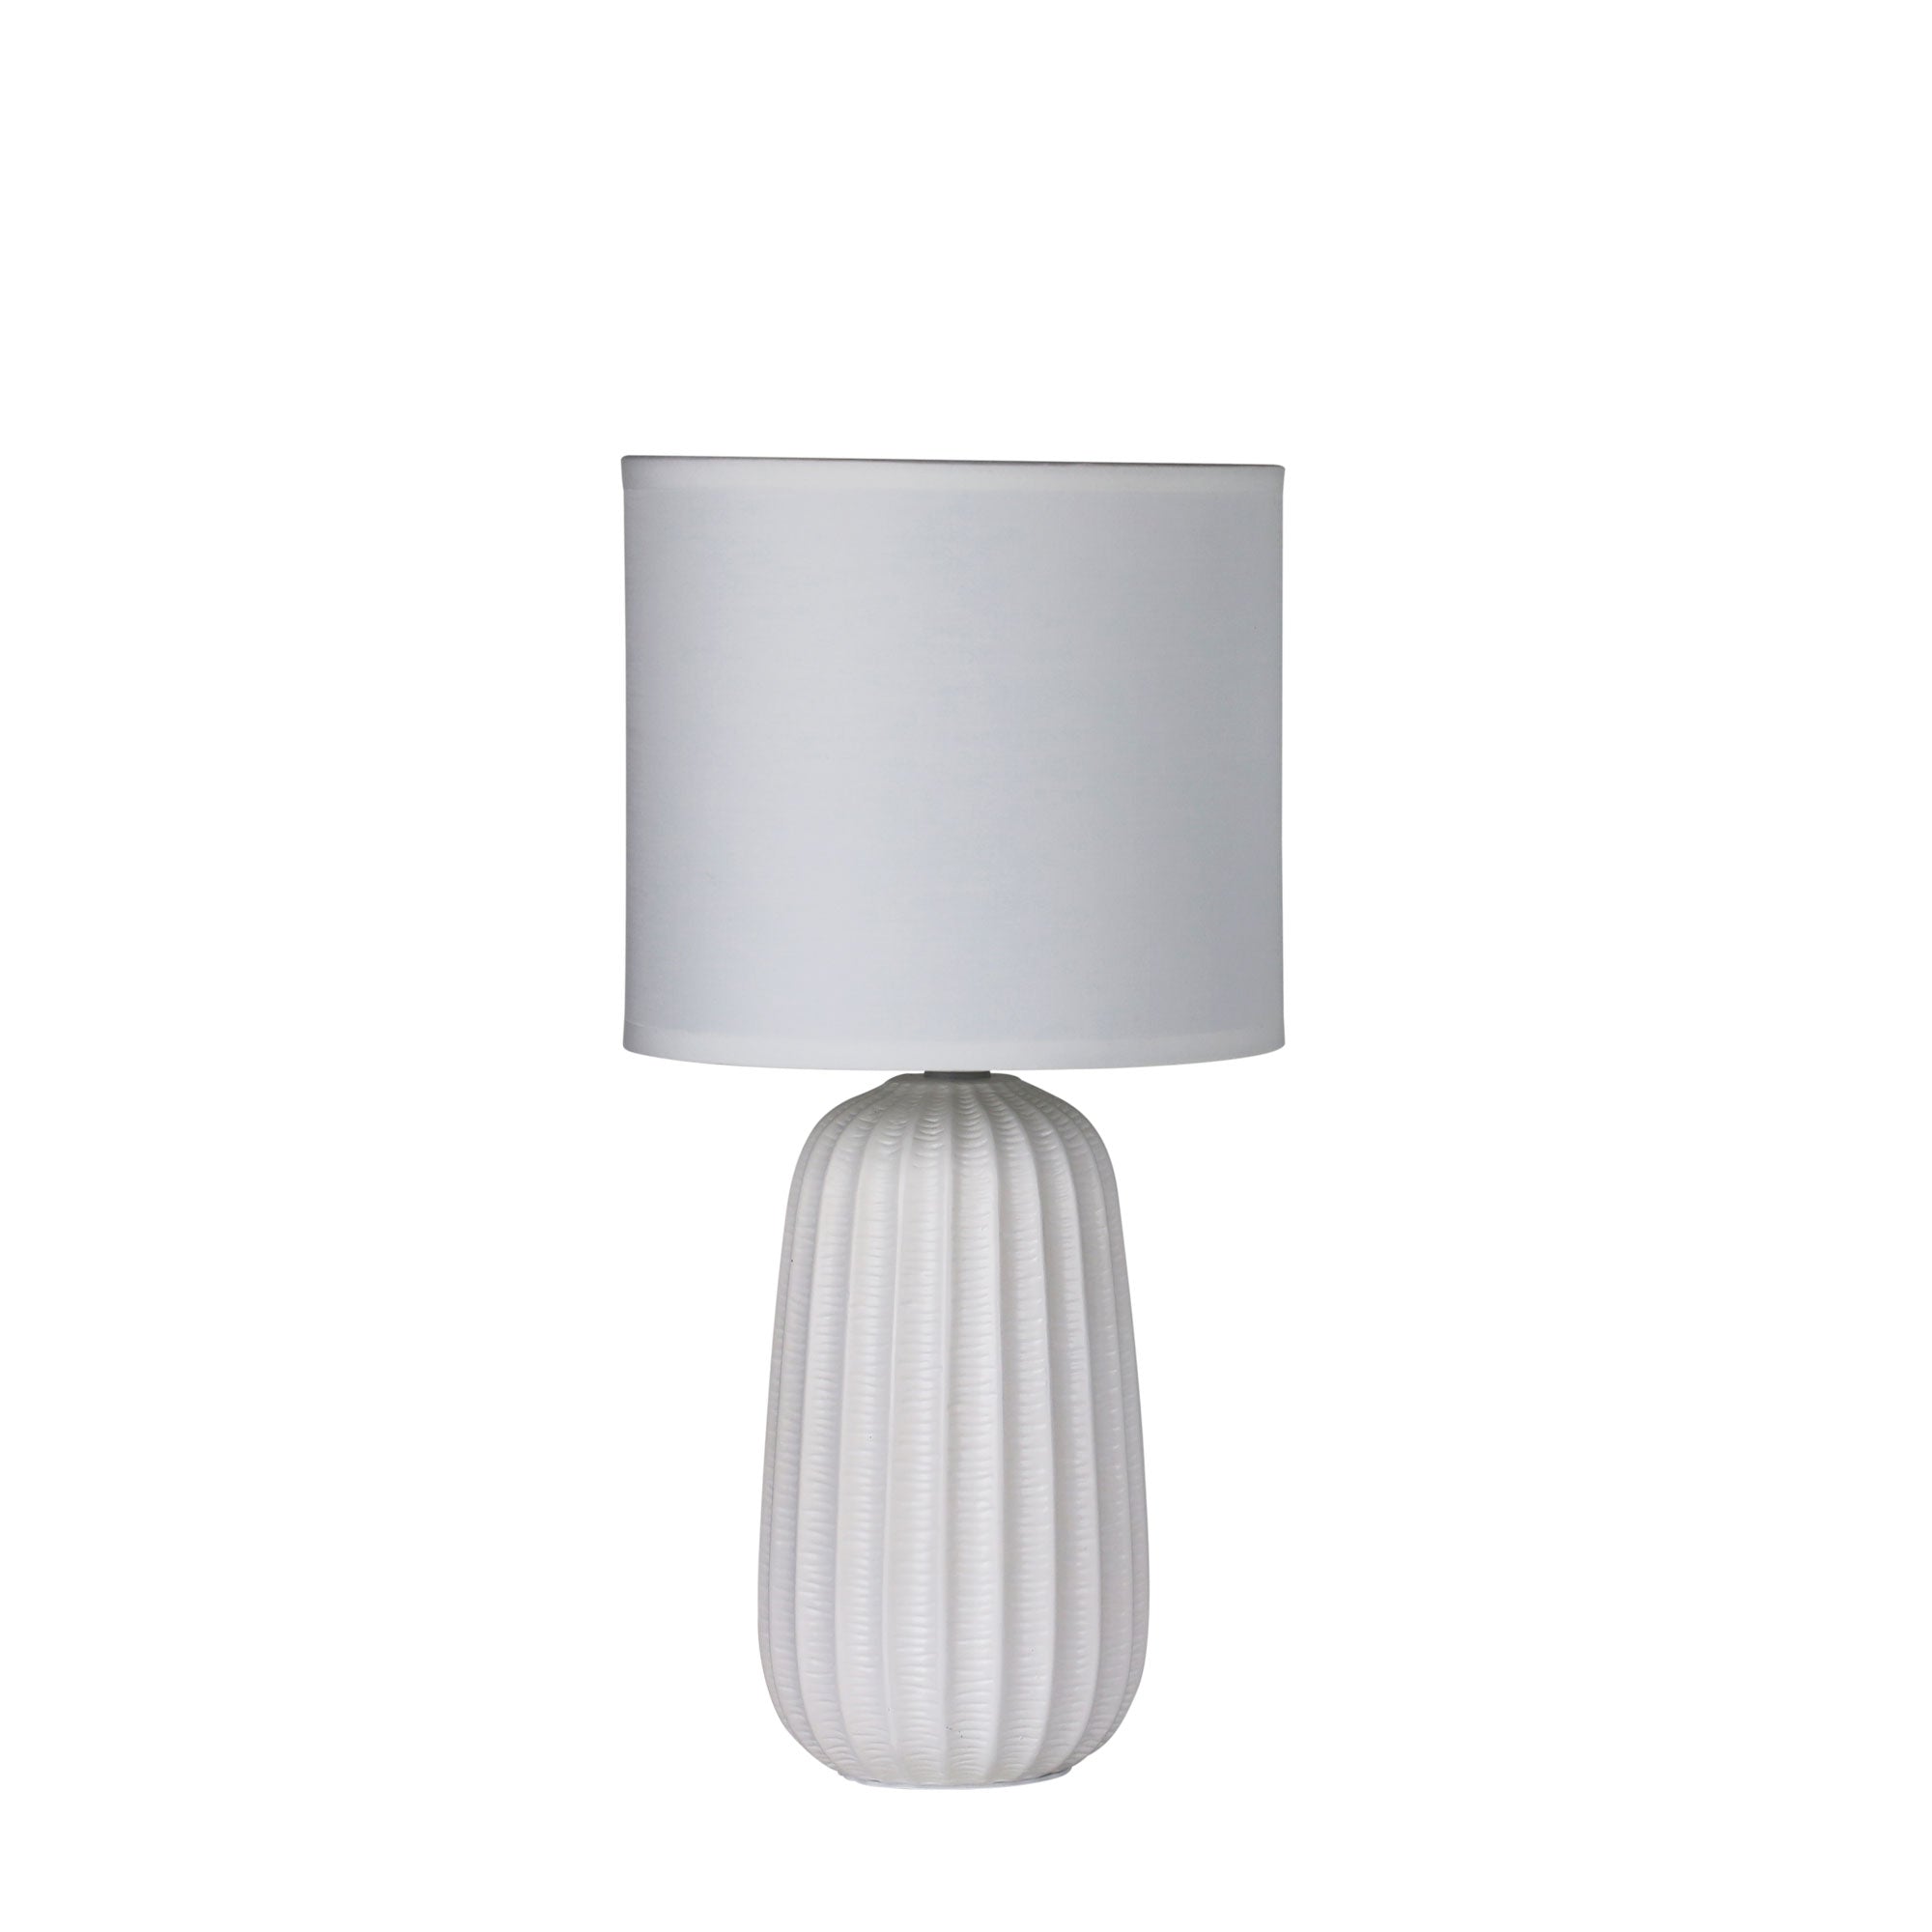 Benjy.20 1 Light Table Lamp White - OL90110WH